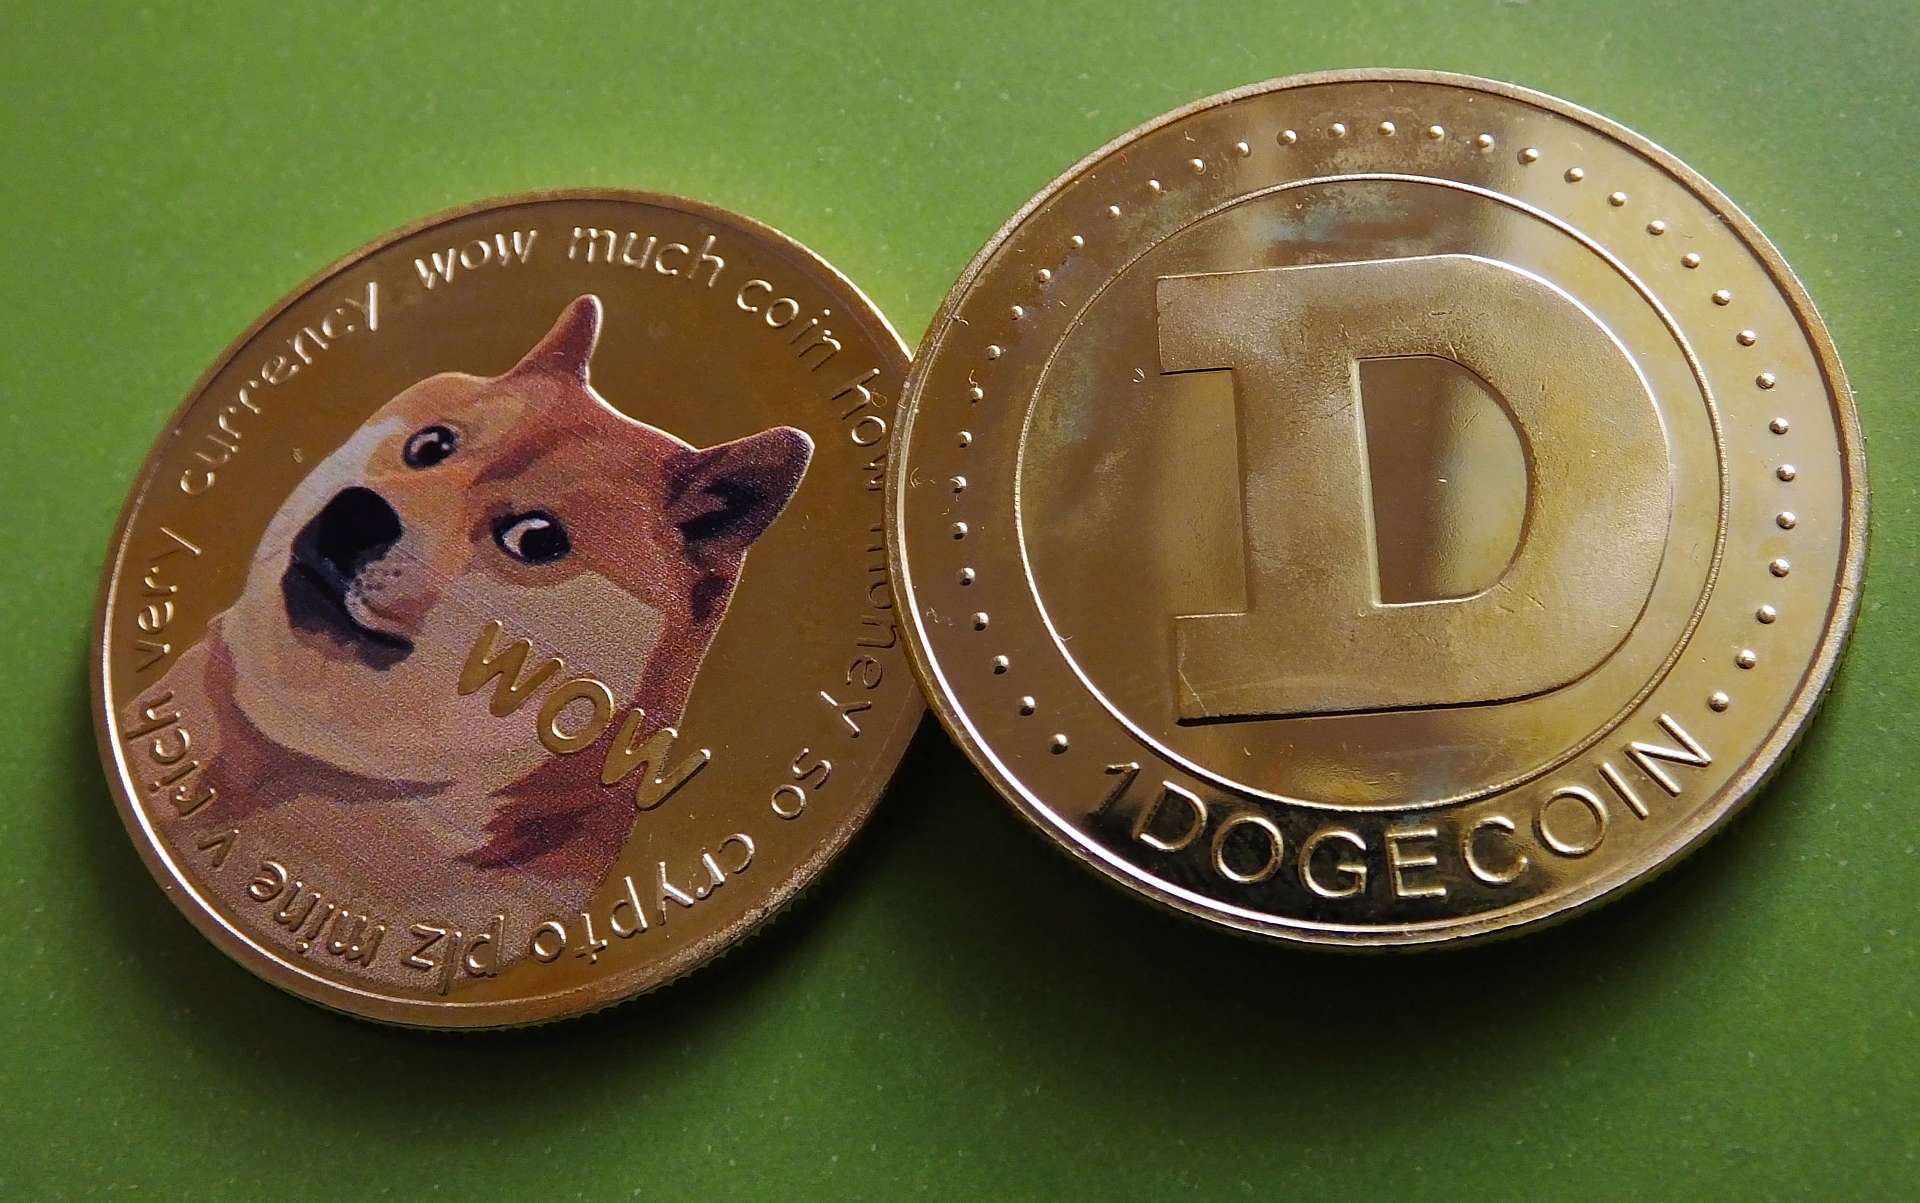 Comment Dogecoin peut-il devenir la monnaie d’internet ?